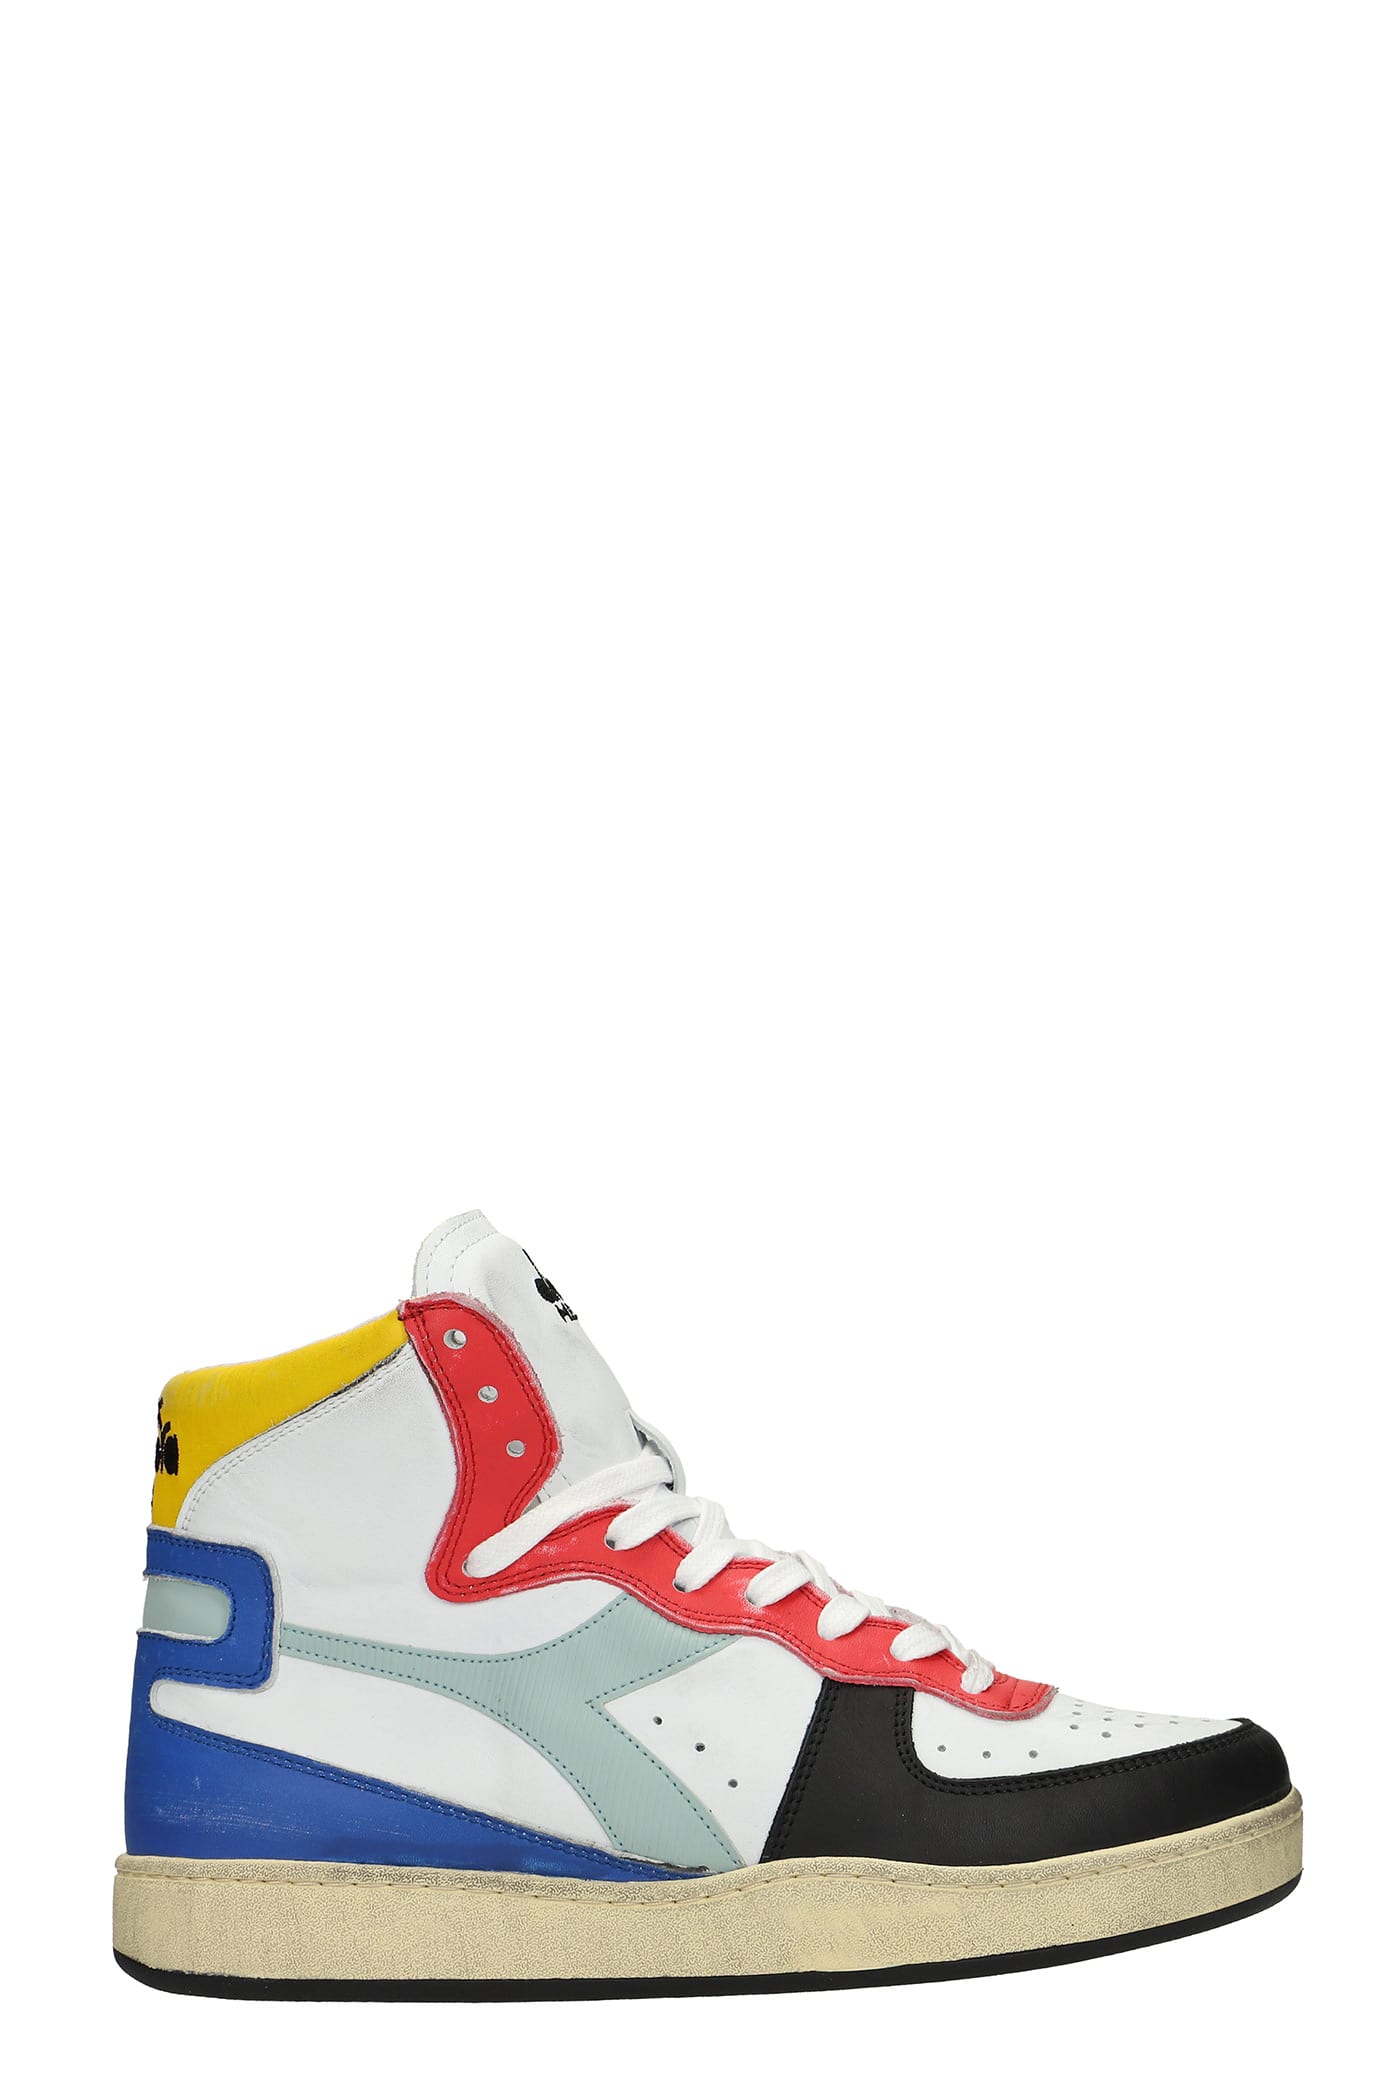 Diadora Mi Basket Sneakers In White Leather